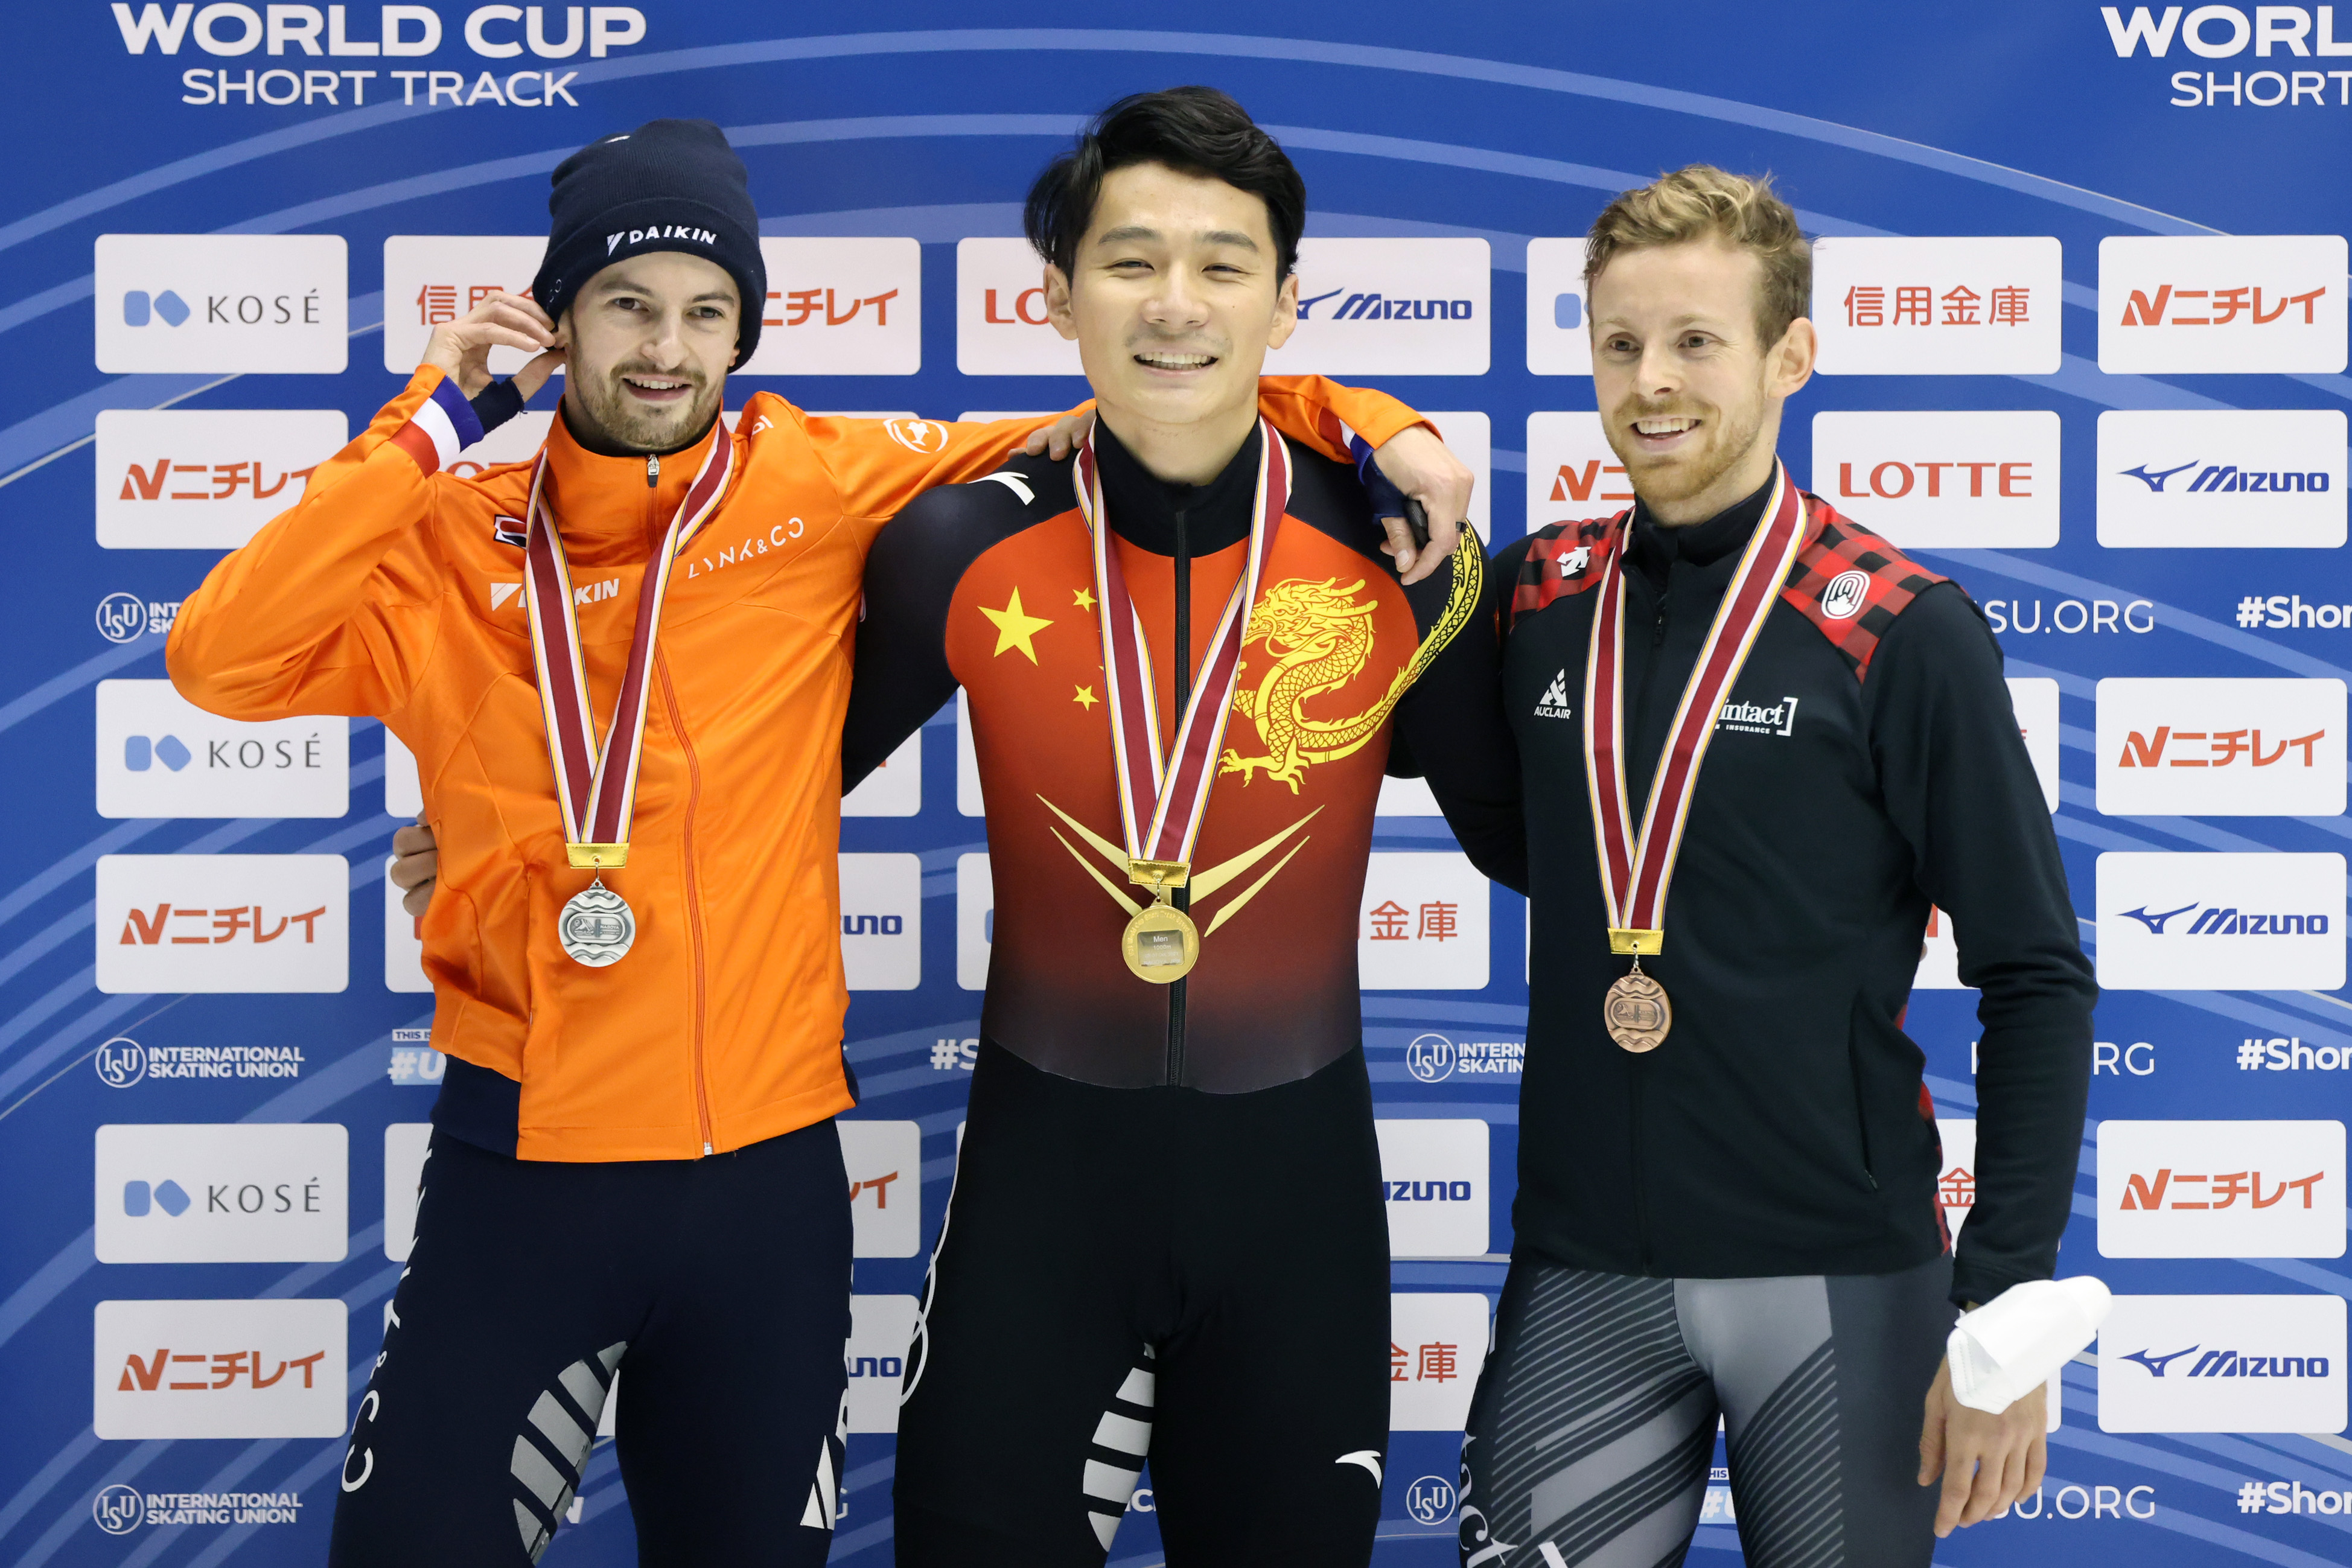 任子威短道速滑世界杯一千米夺冠中国队拿下1金3银2铜